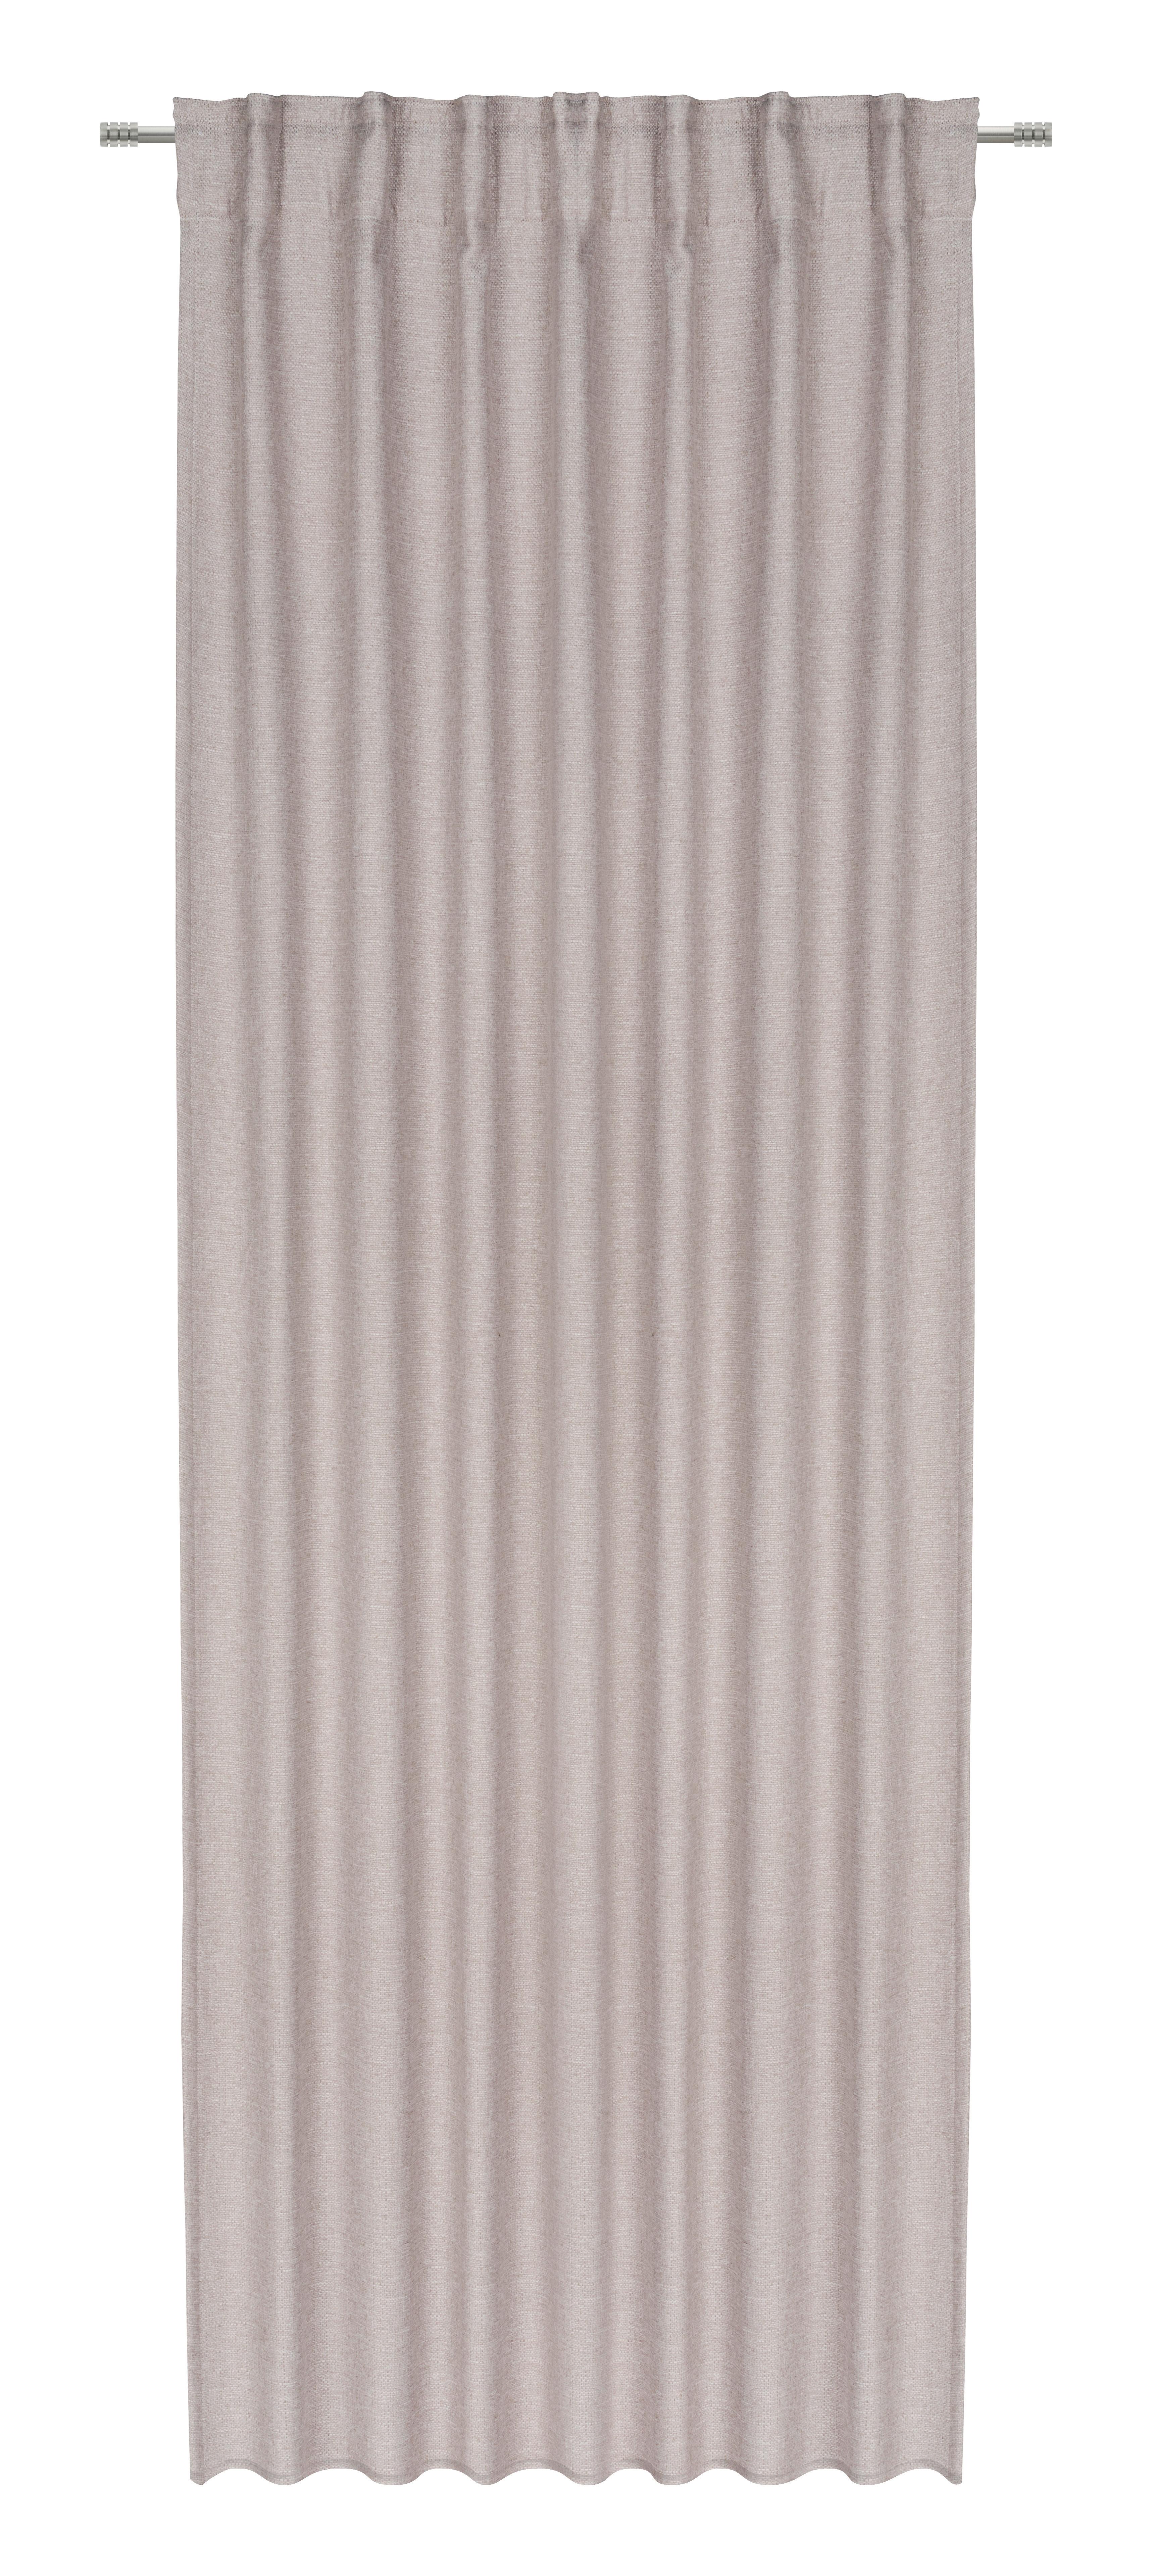 Termoizolační Závěs Alfi, 135/255cm, Béžová - béžová, Konvenční, textil (135/255cm) - Modern Living